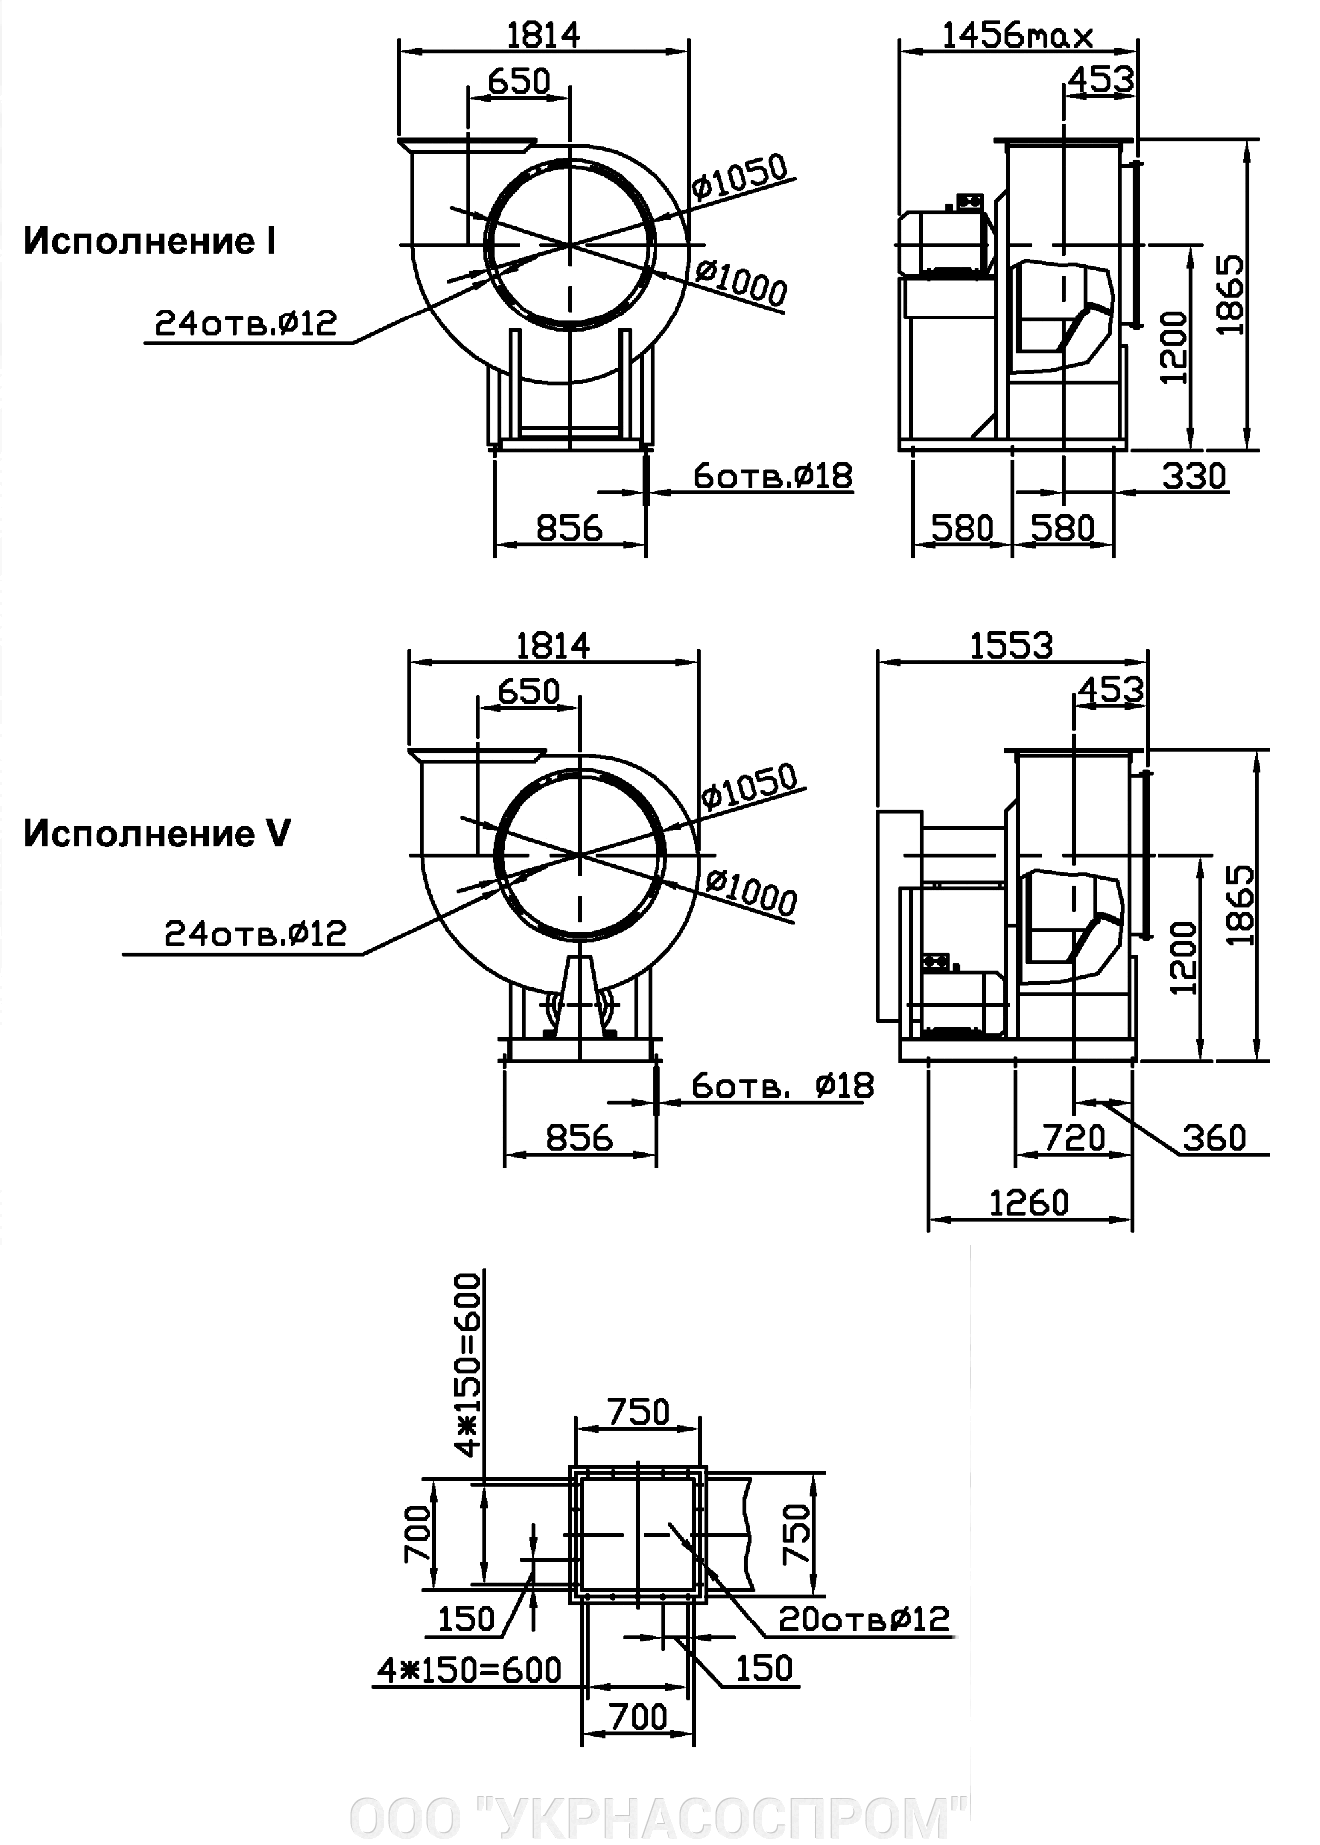 Вентилятор ВЦ 4-75 №10 11 кВт 1000 об/мин